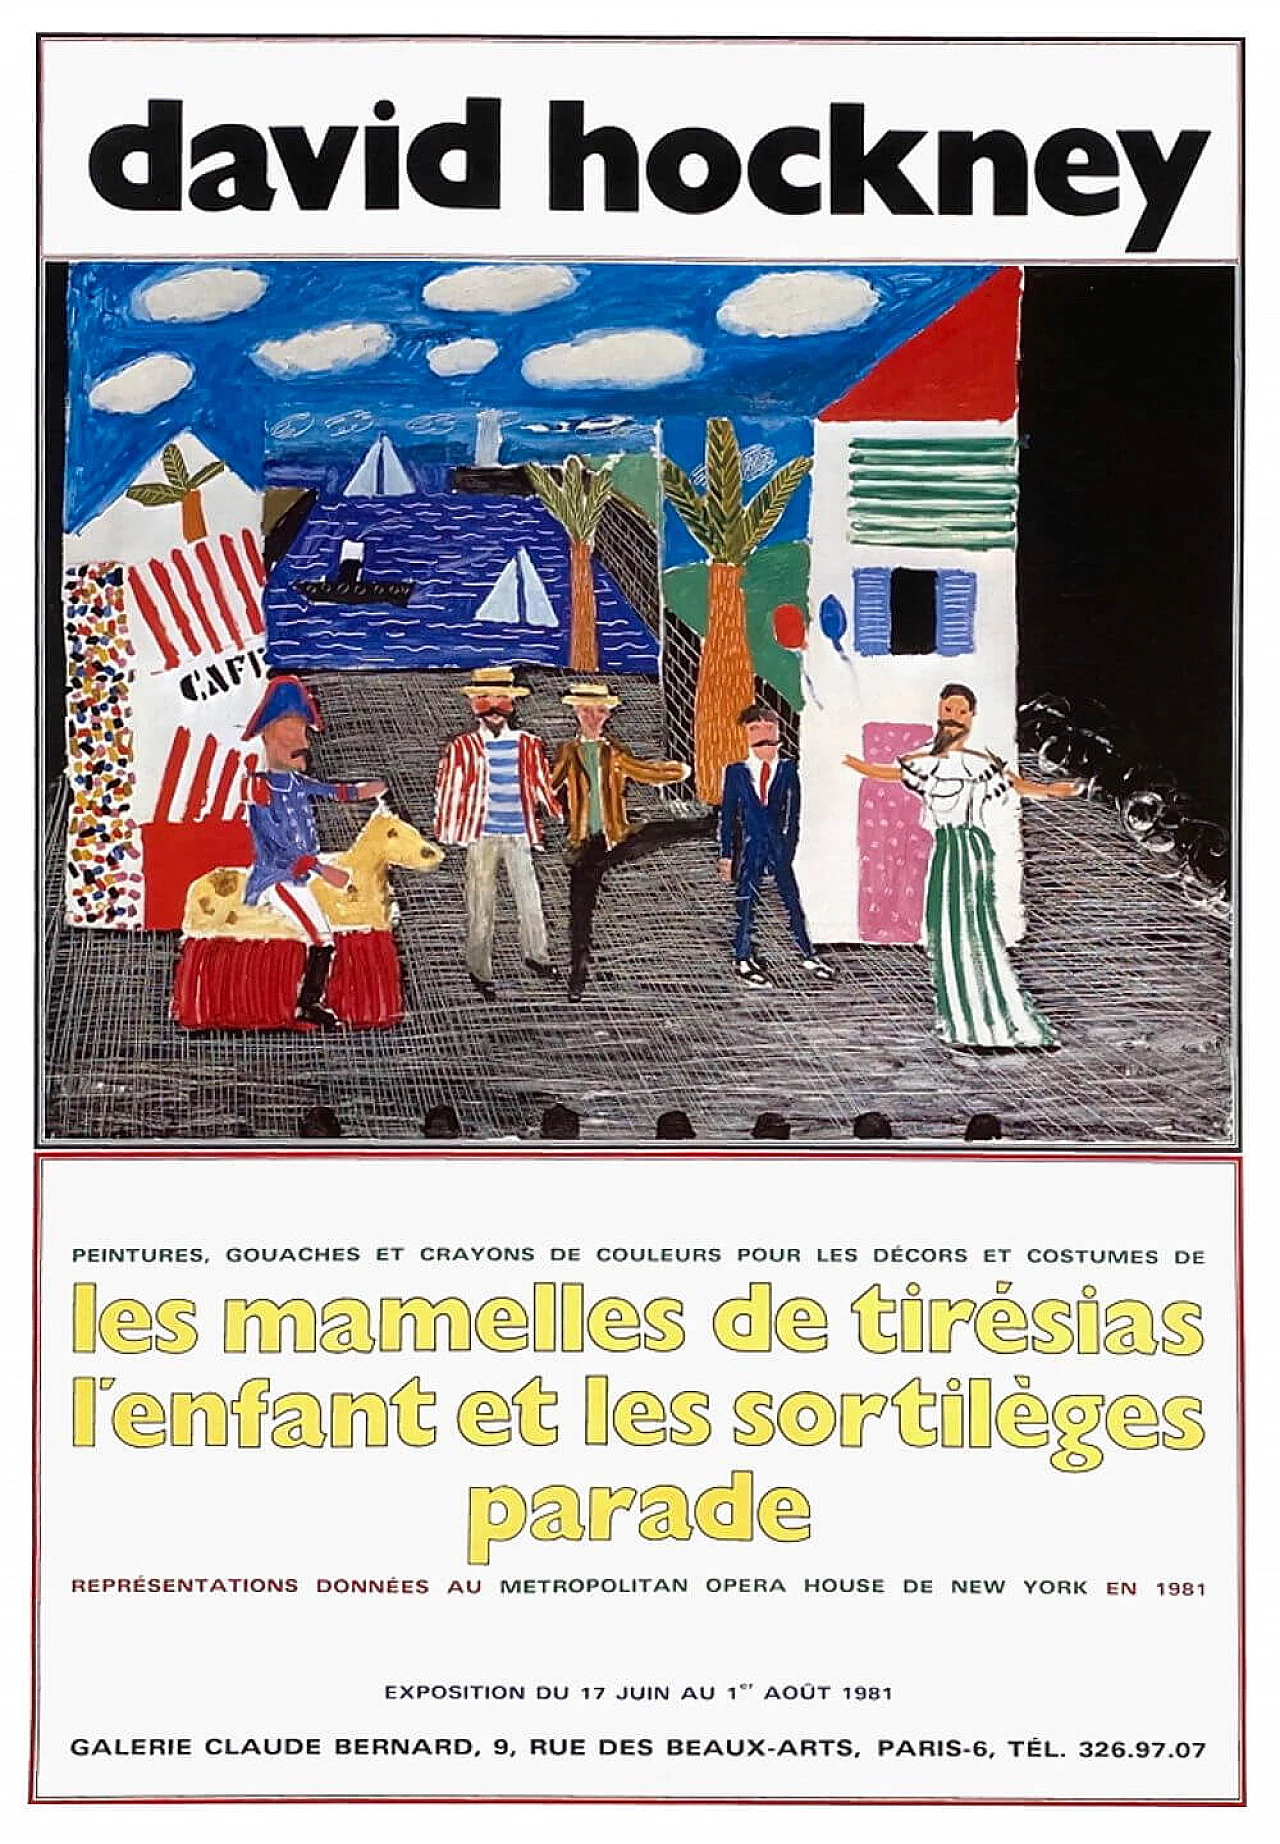 David Hockney Exhibition Poster, 1981 1219472